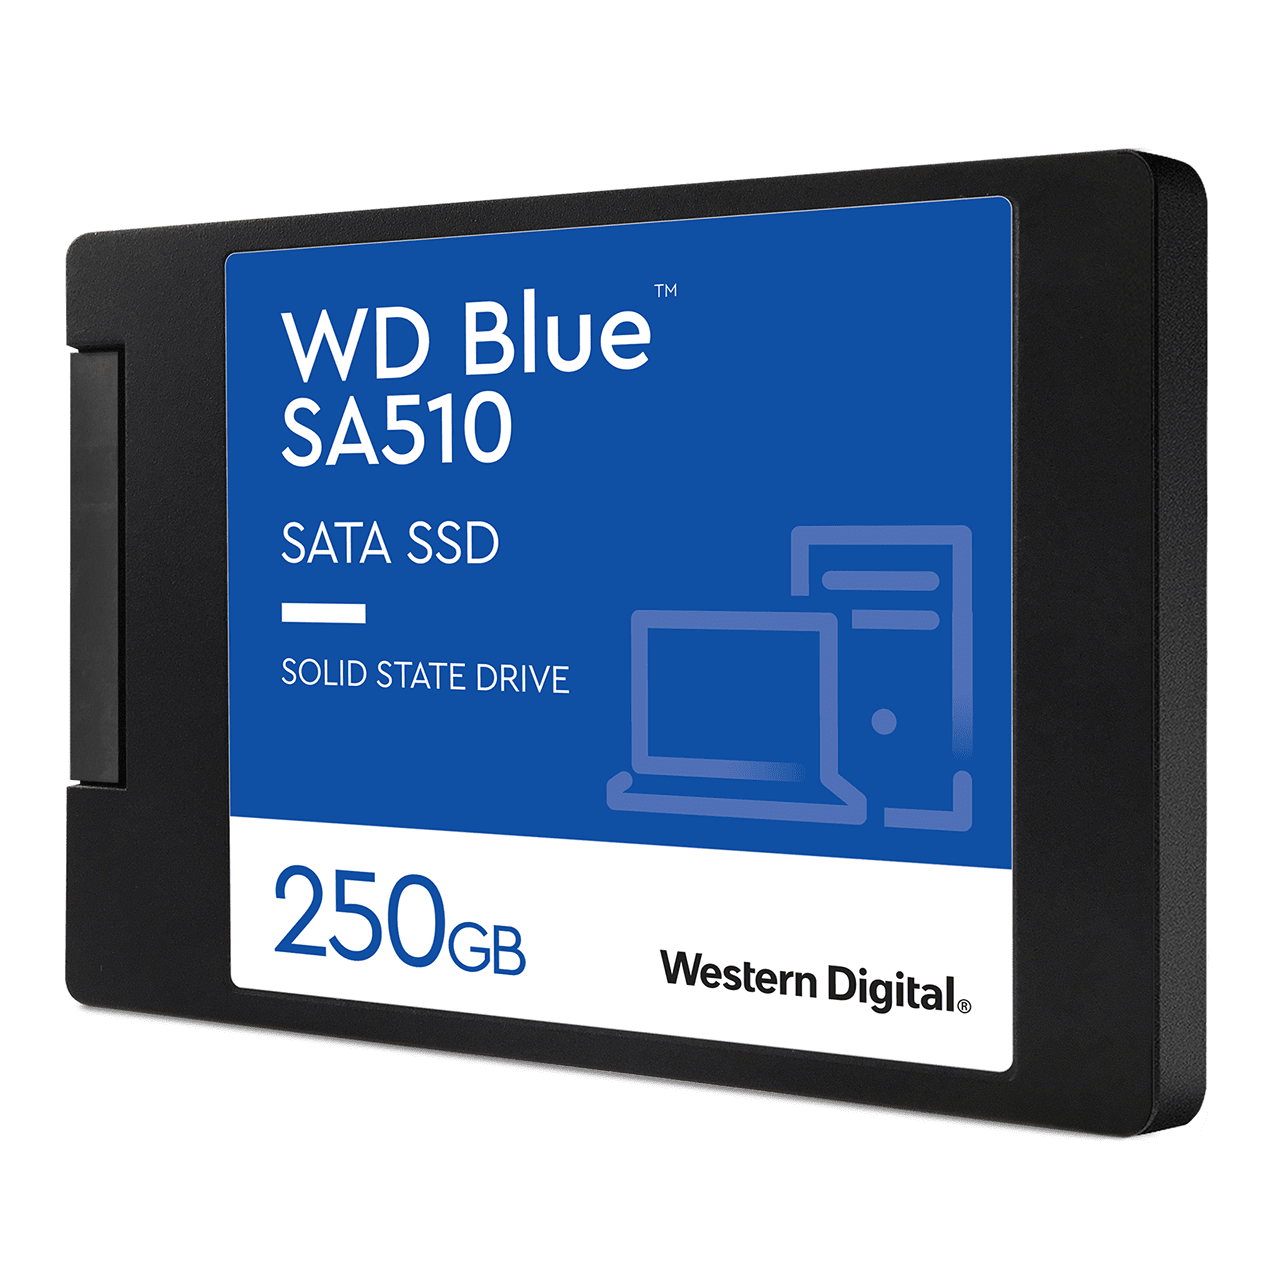 WD BLUE 500GB SSD